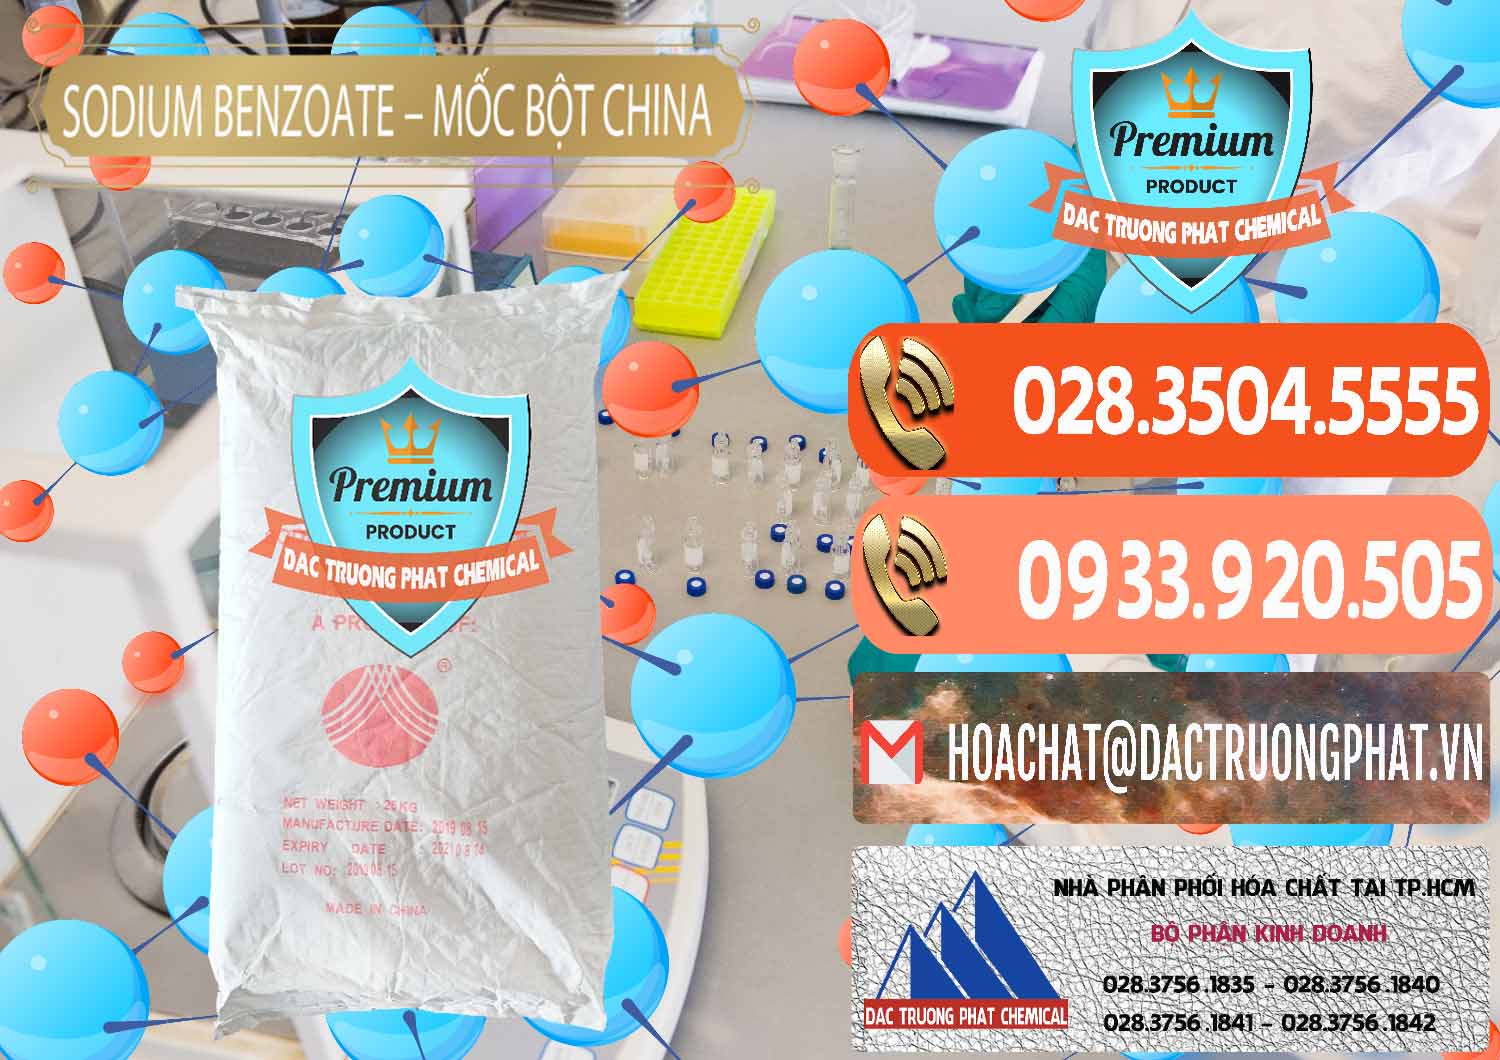 Cty chuyên bán ( cung cấp ) Sodium Benzoate - Mốc Bột Chữ Cam Food Grade Trung Quốc China - 0135 - Chuyên phân phối & kinh doanh hóa chất tại TP.HCM - hoachatmientay.com